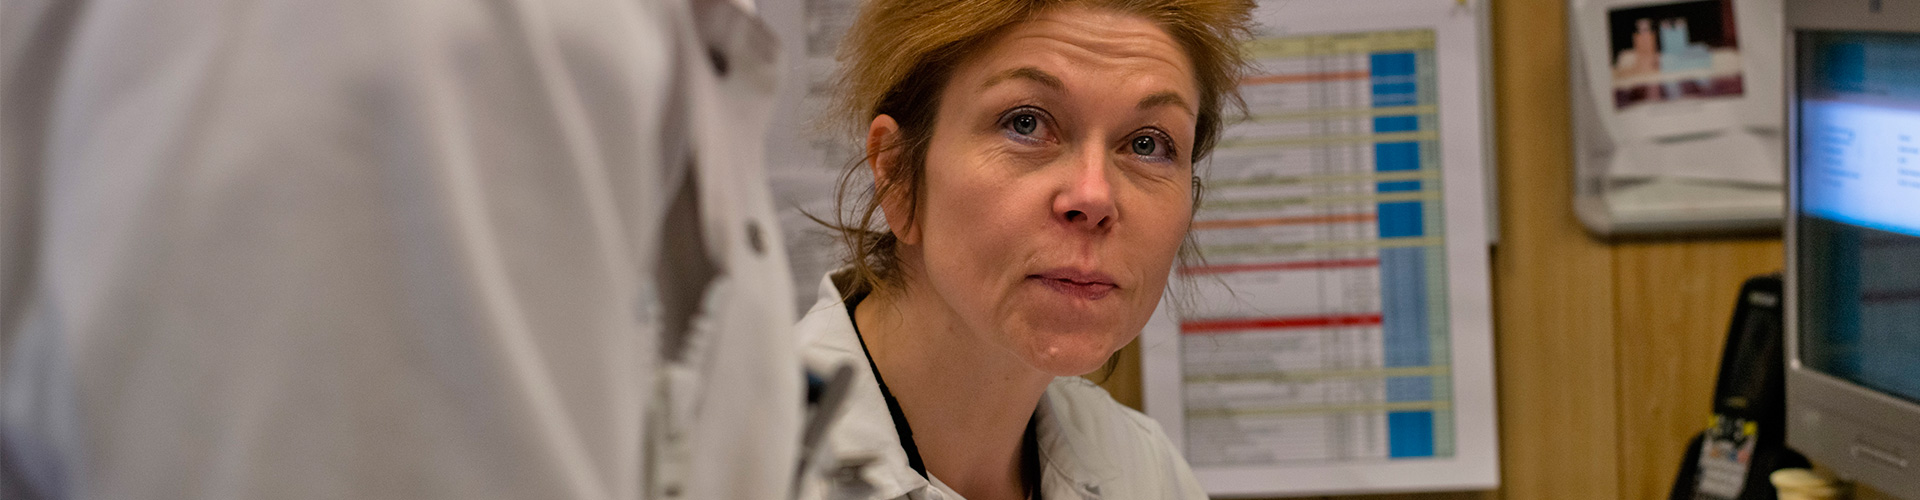 Françoise Boulanger, Radiation Safety Officer, la Hague plant.